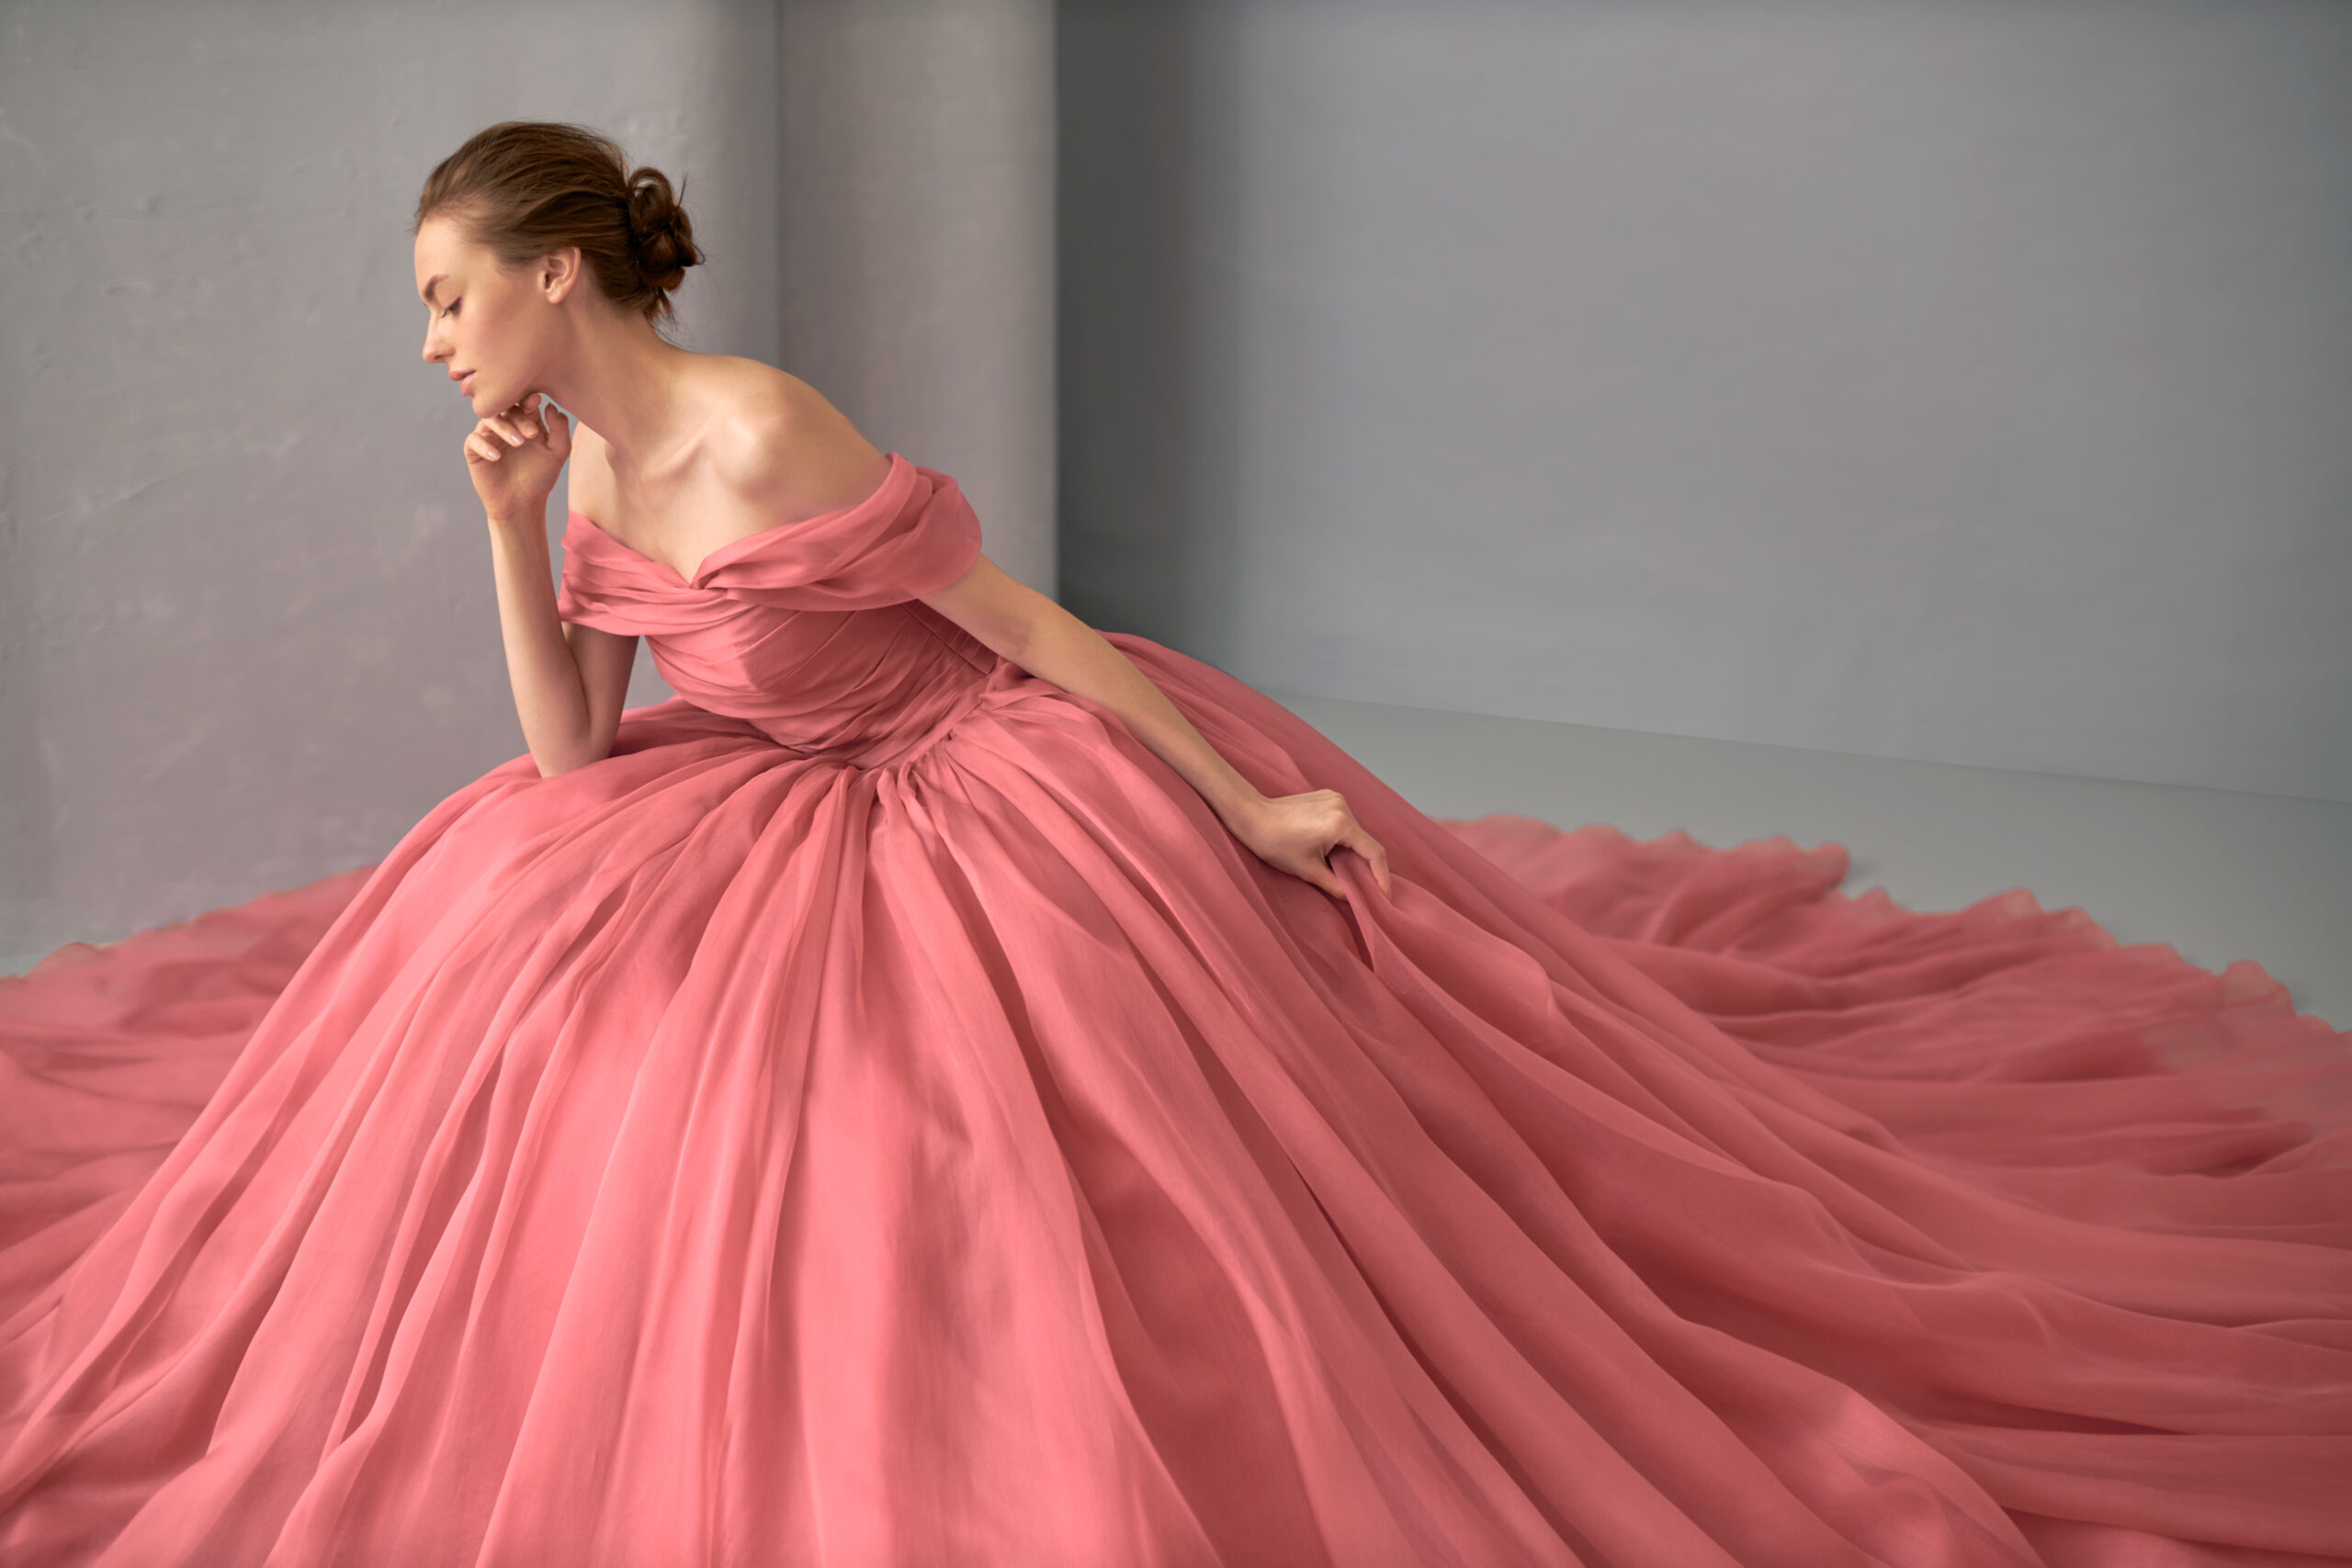 即日発送】 爽やかで愛らしいピンクカラードレス 公式アプリ:10769円 結婚式